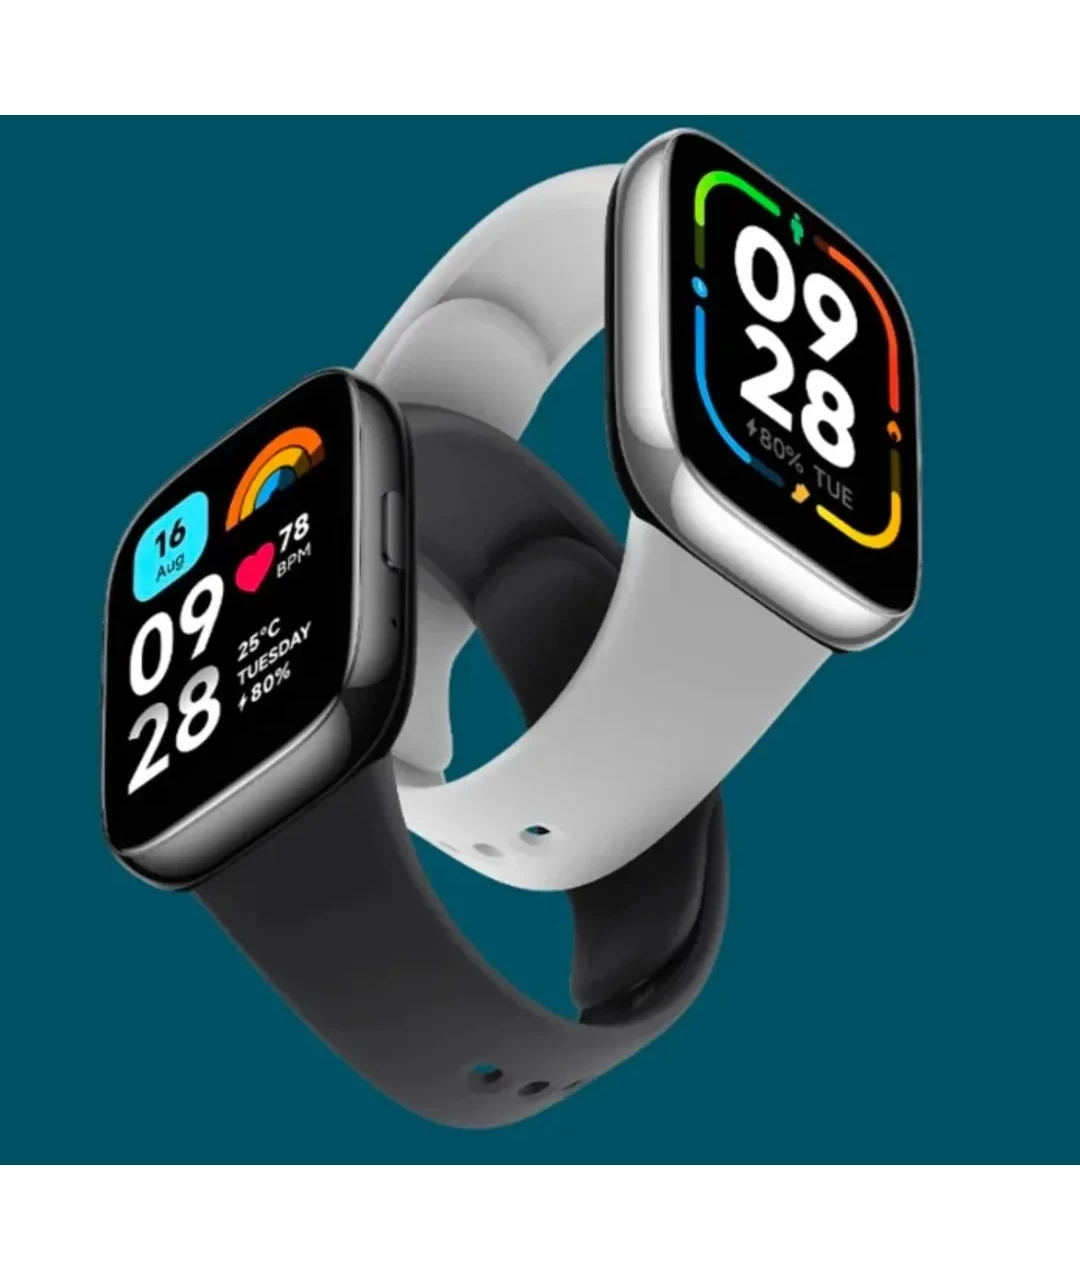 Редми вотч 3. Смарт-часы Redmi watch 3. Смарт часы редми вотч 3 Актив. Xiaomi Redmi watch 3 Active.